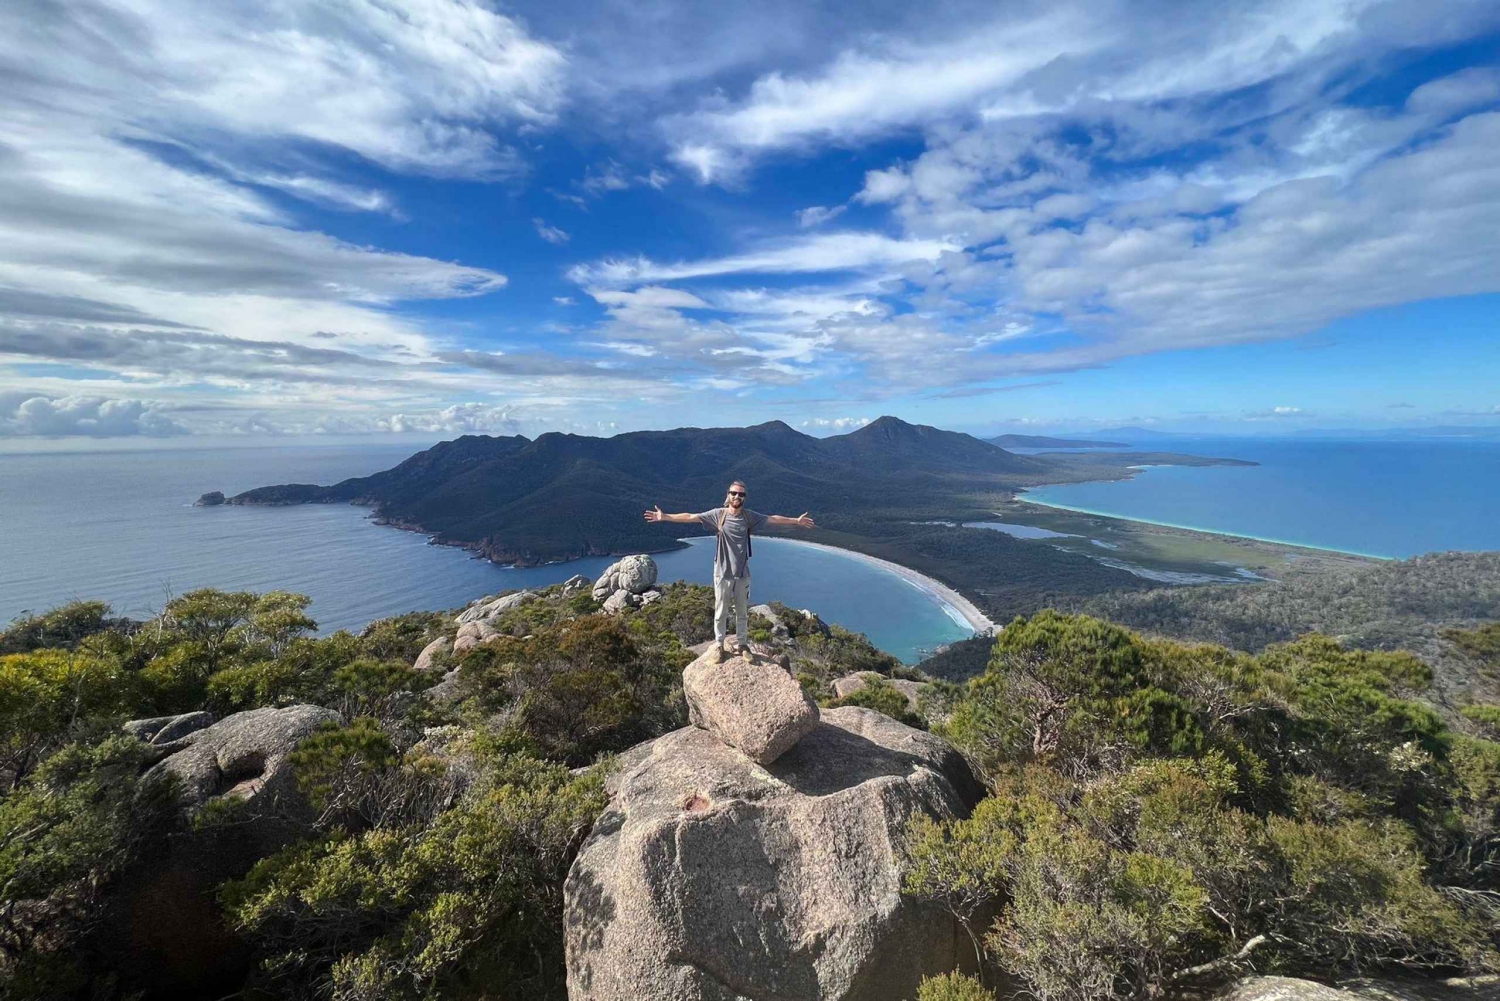 Tasmanie : Circuit de 5 jours avec Cradle Mountain